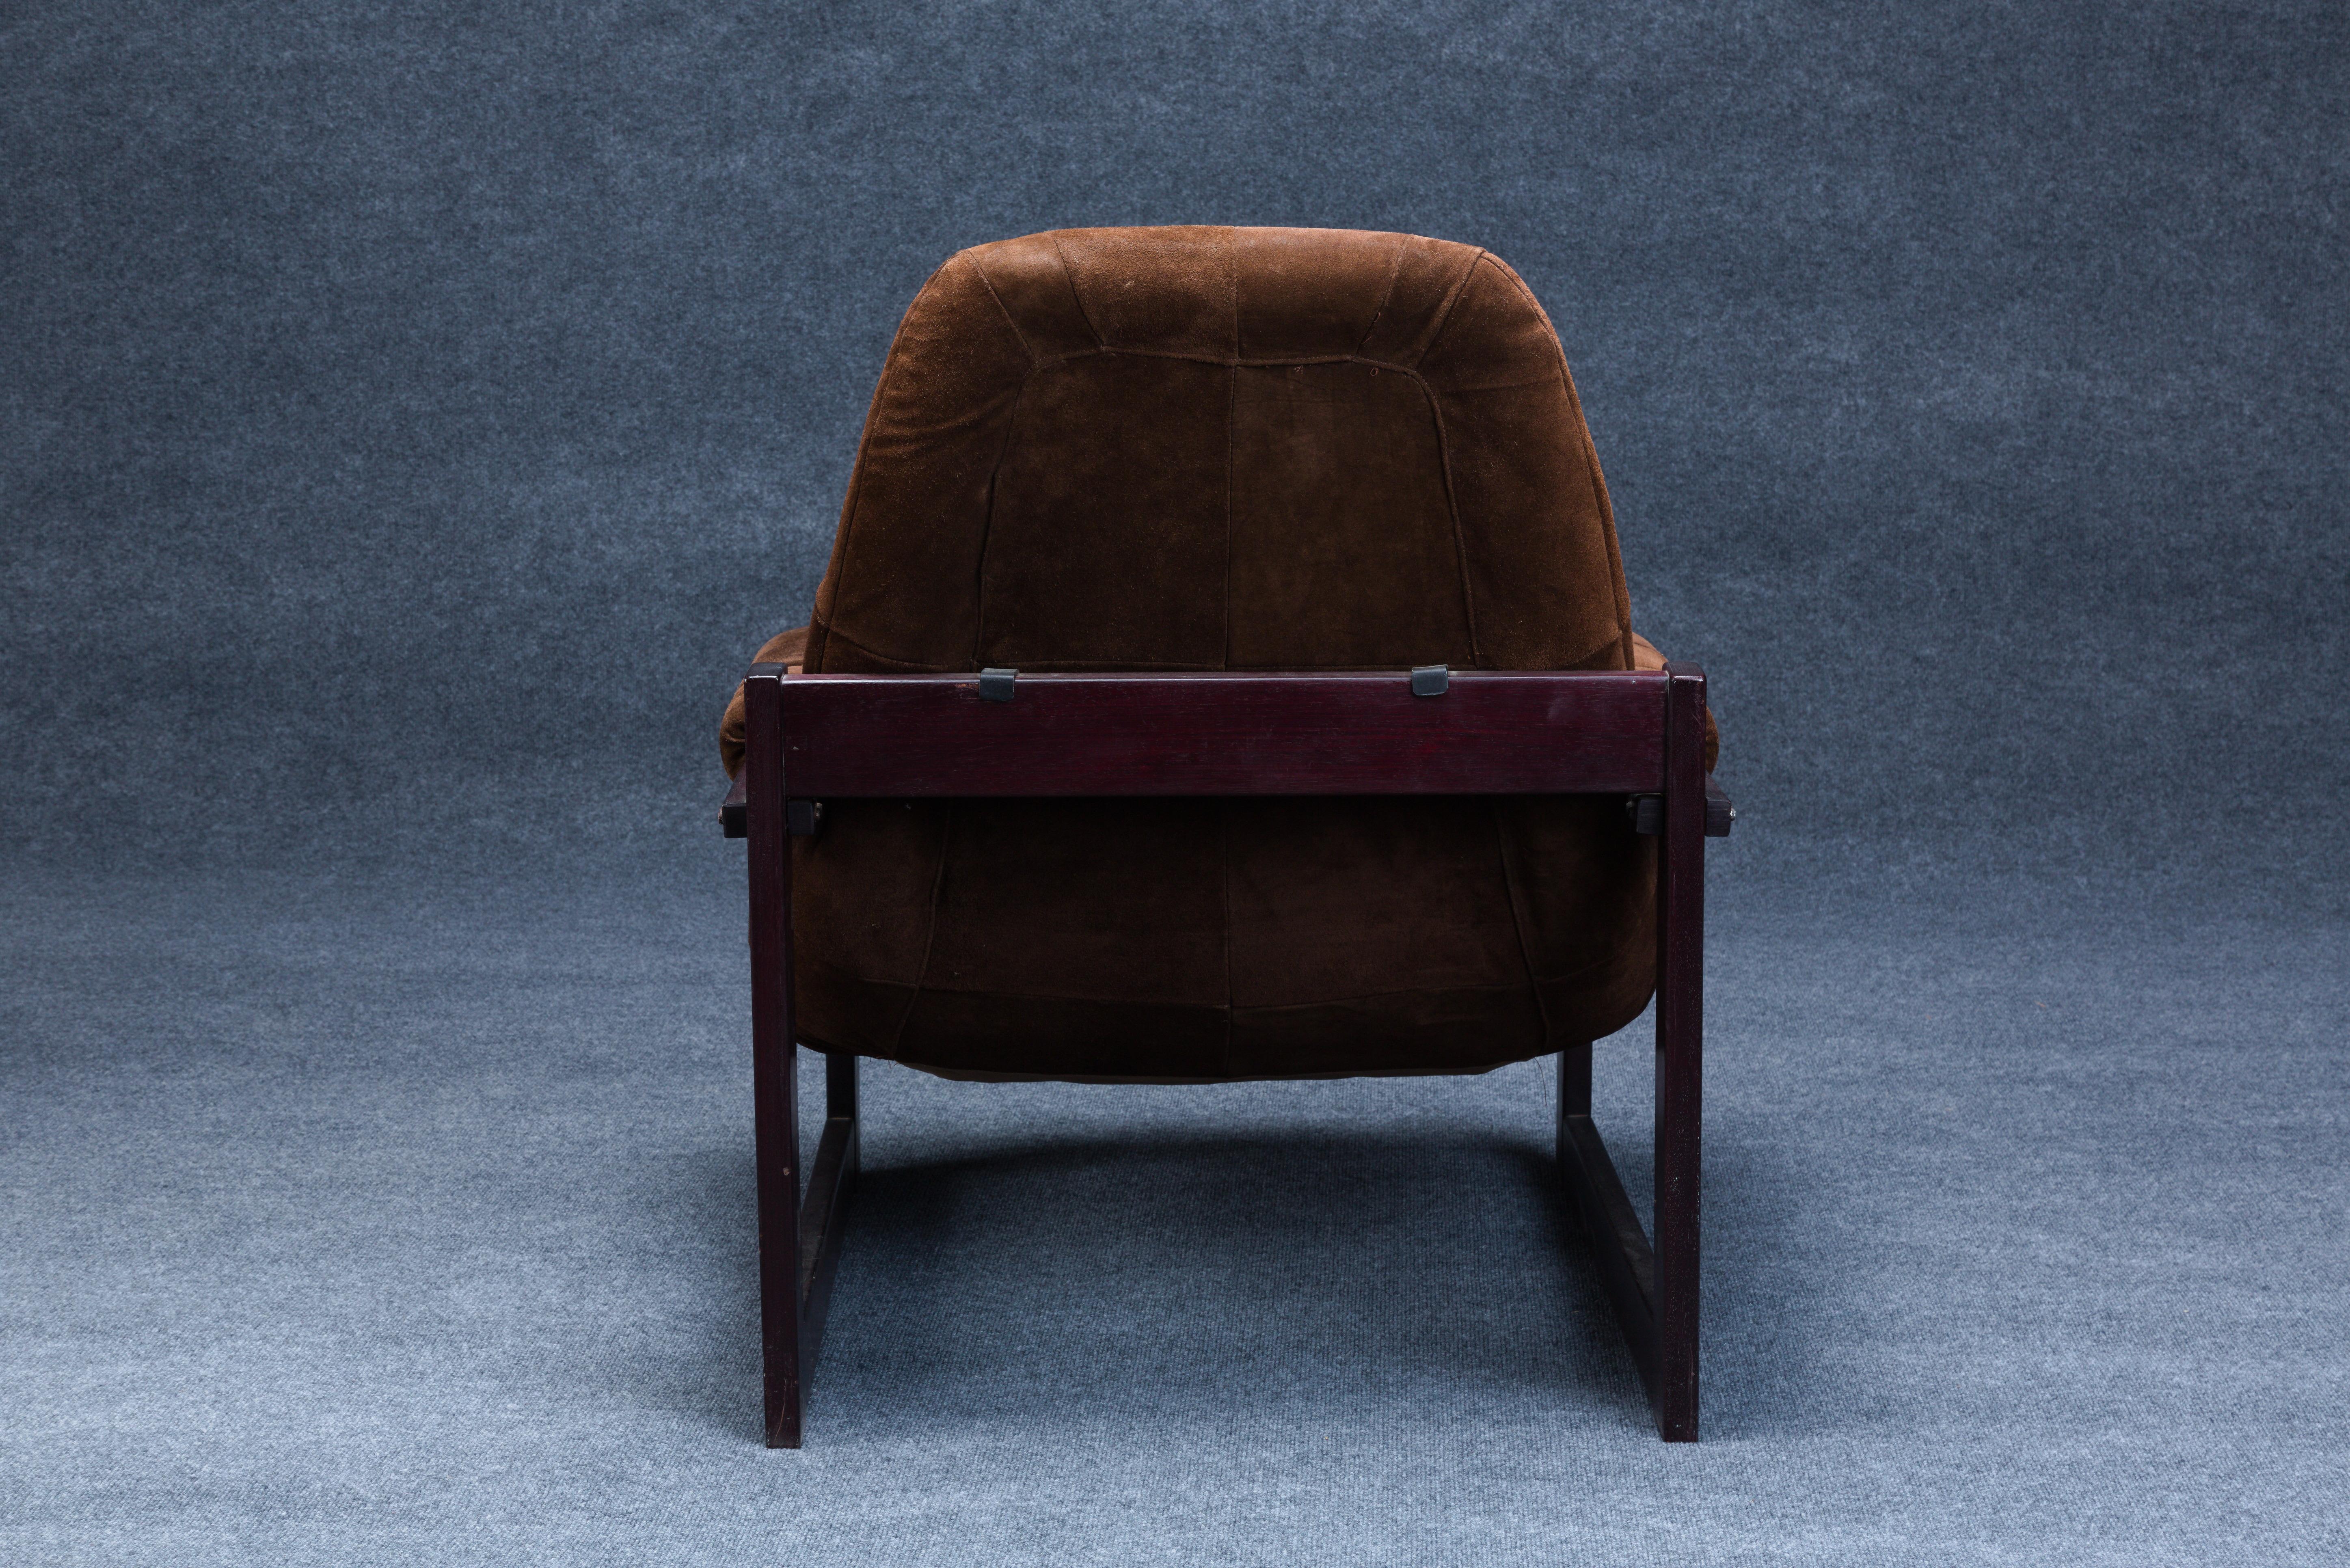 Percival Lafer (Brésilien, né en 1936) Chaise longue et ottoman, Brésil, vers 1965, châssis en bois de rose avec revêtement en cuir, chaise, étiquette de Design Lafer en aluminium et restes d'une étiquette en papier, ht. 36, siège ht. 15 1/2, wd.